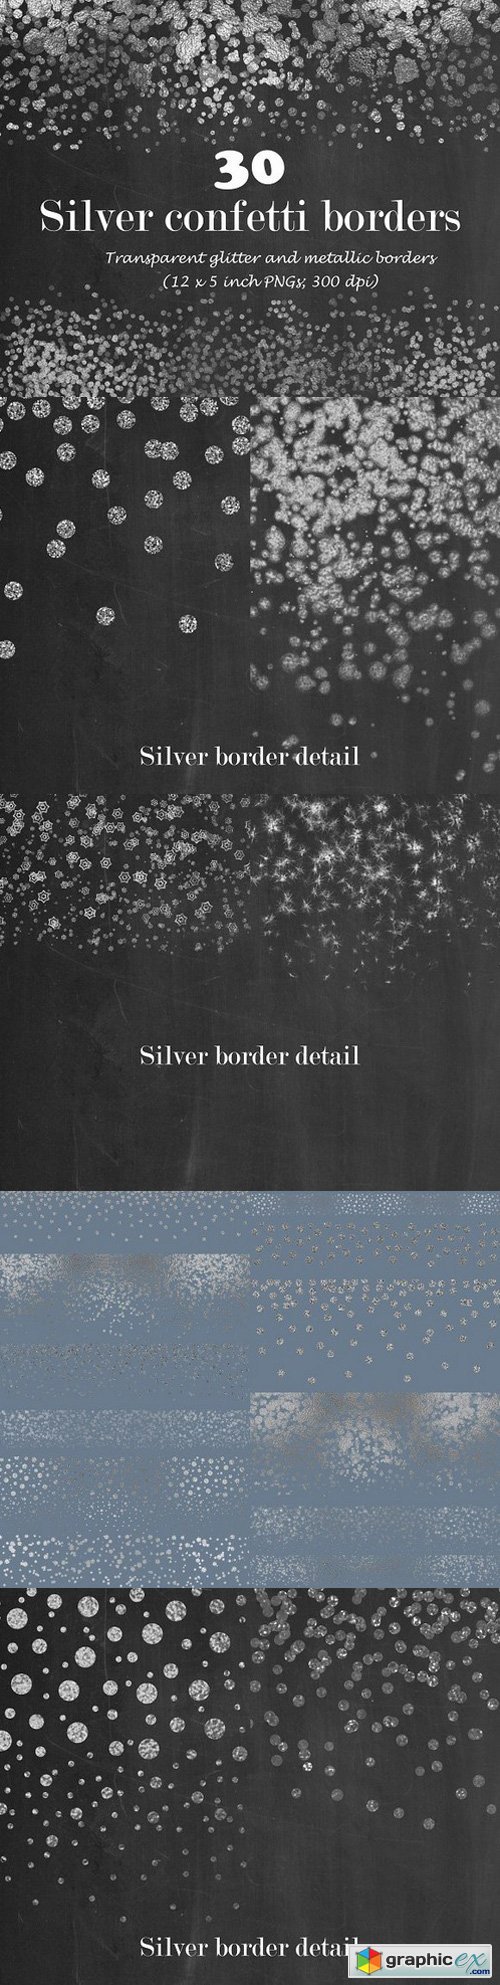 Silver confetti border overlay